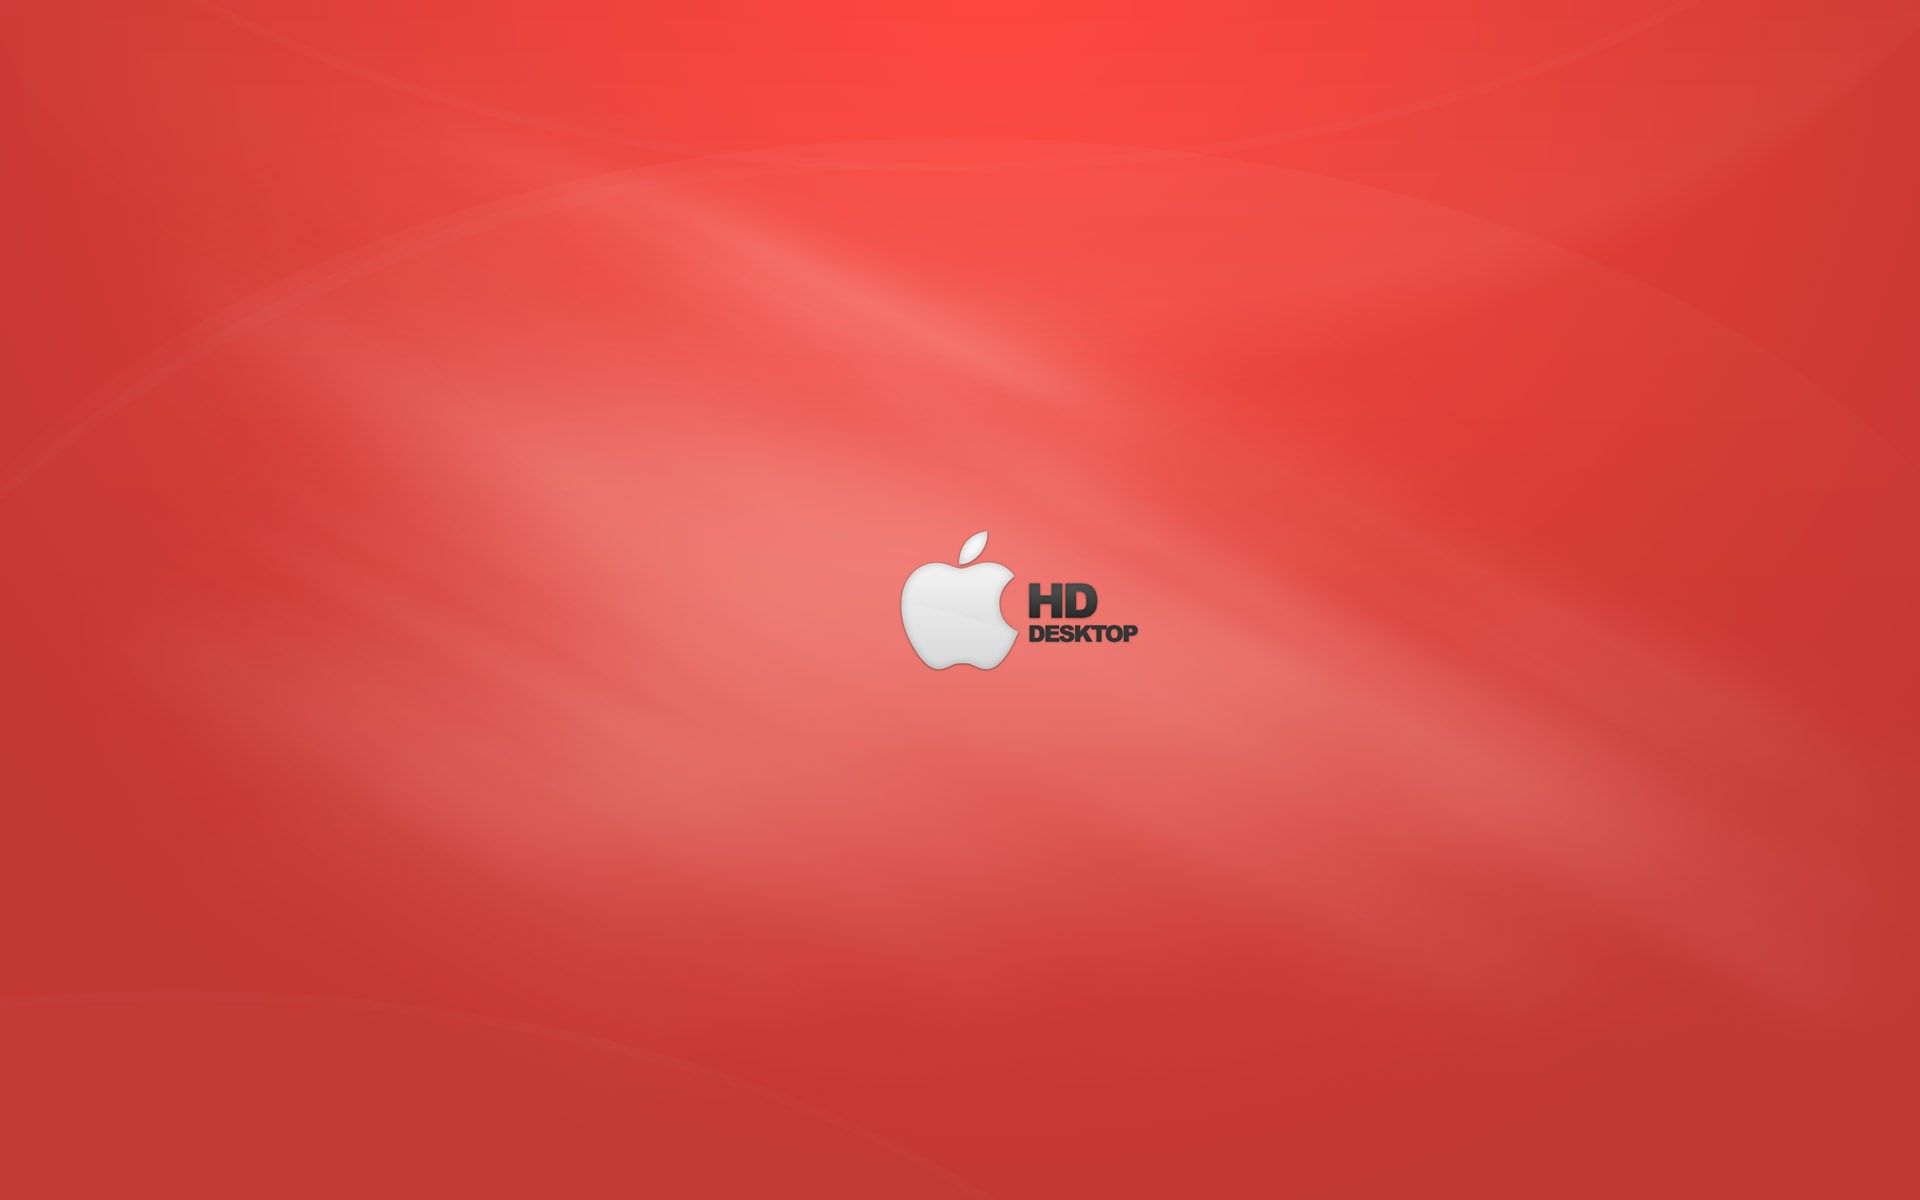 apple image for background desktop free. Apple image, Red wallpaper, Apple logo